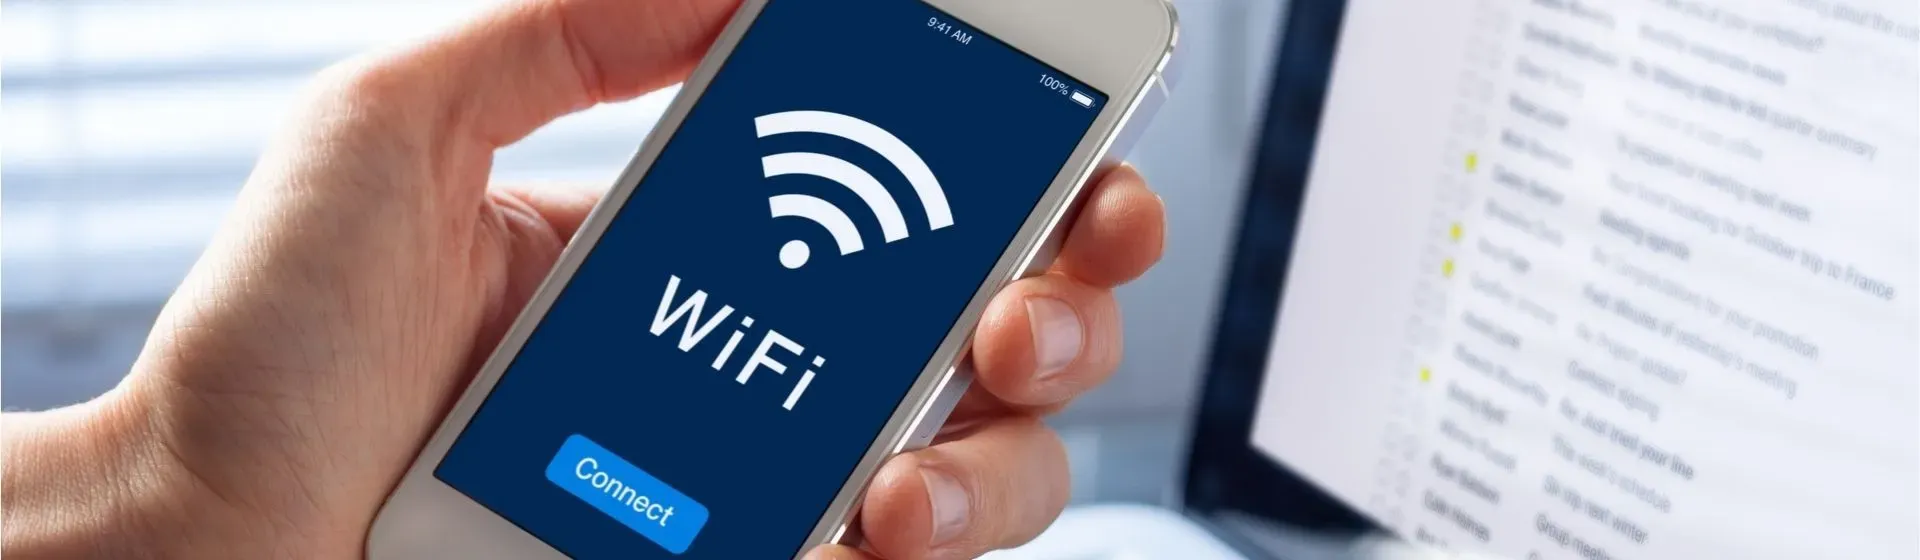 Como descobrir a senha do Wi-Fi em que você já está conectado